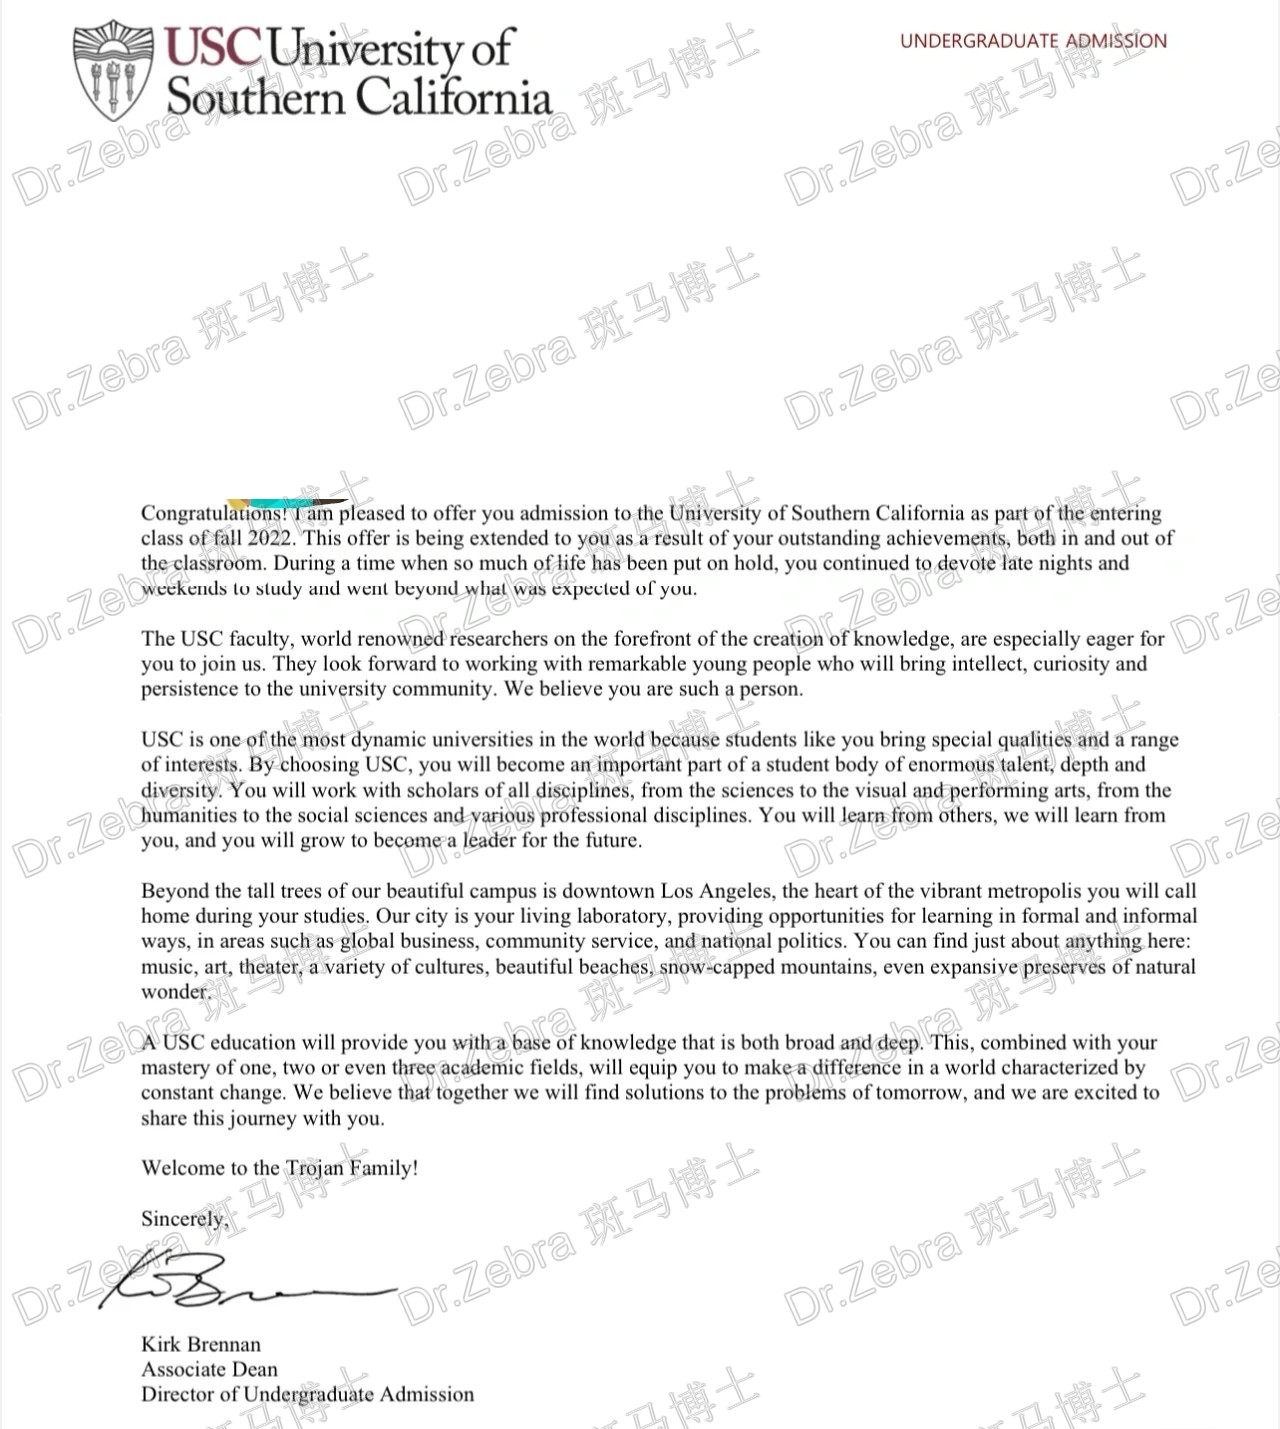 斑马博士、斑马博士留学中心、南加利福尼亚大学、University of Southern California、USC